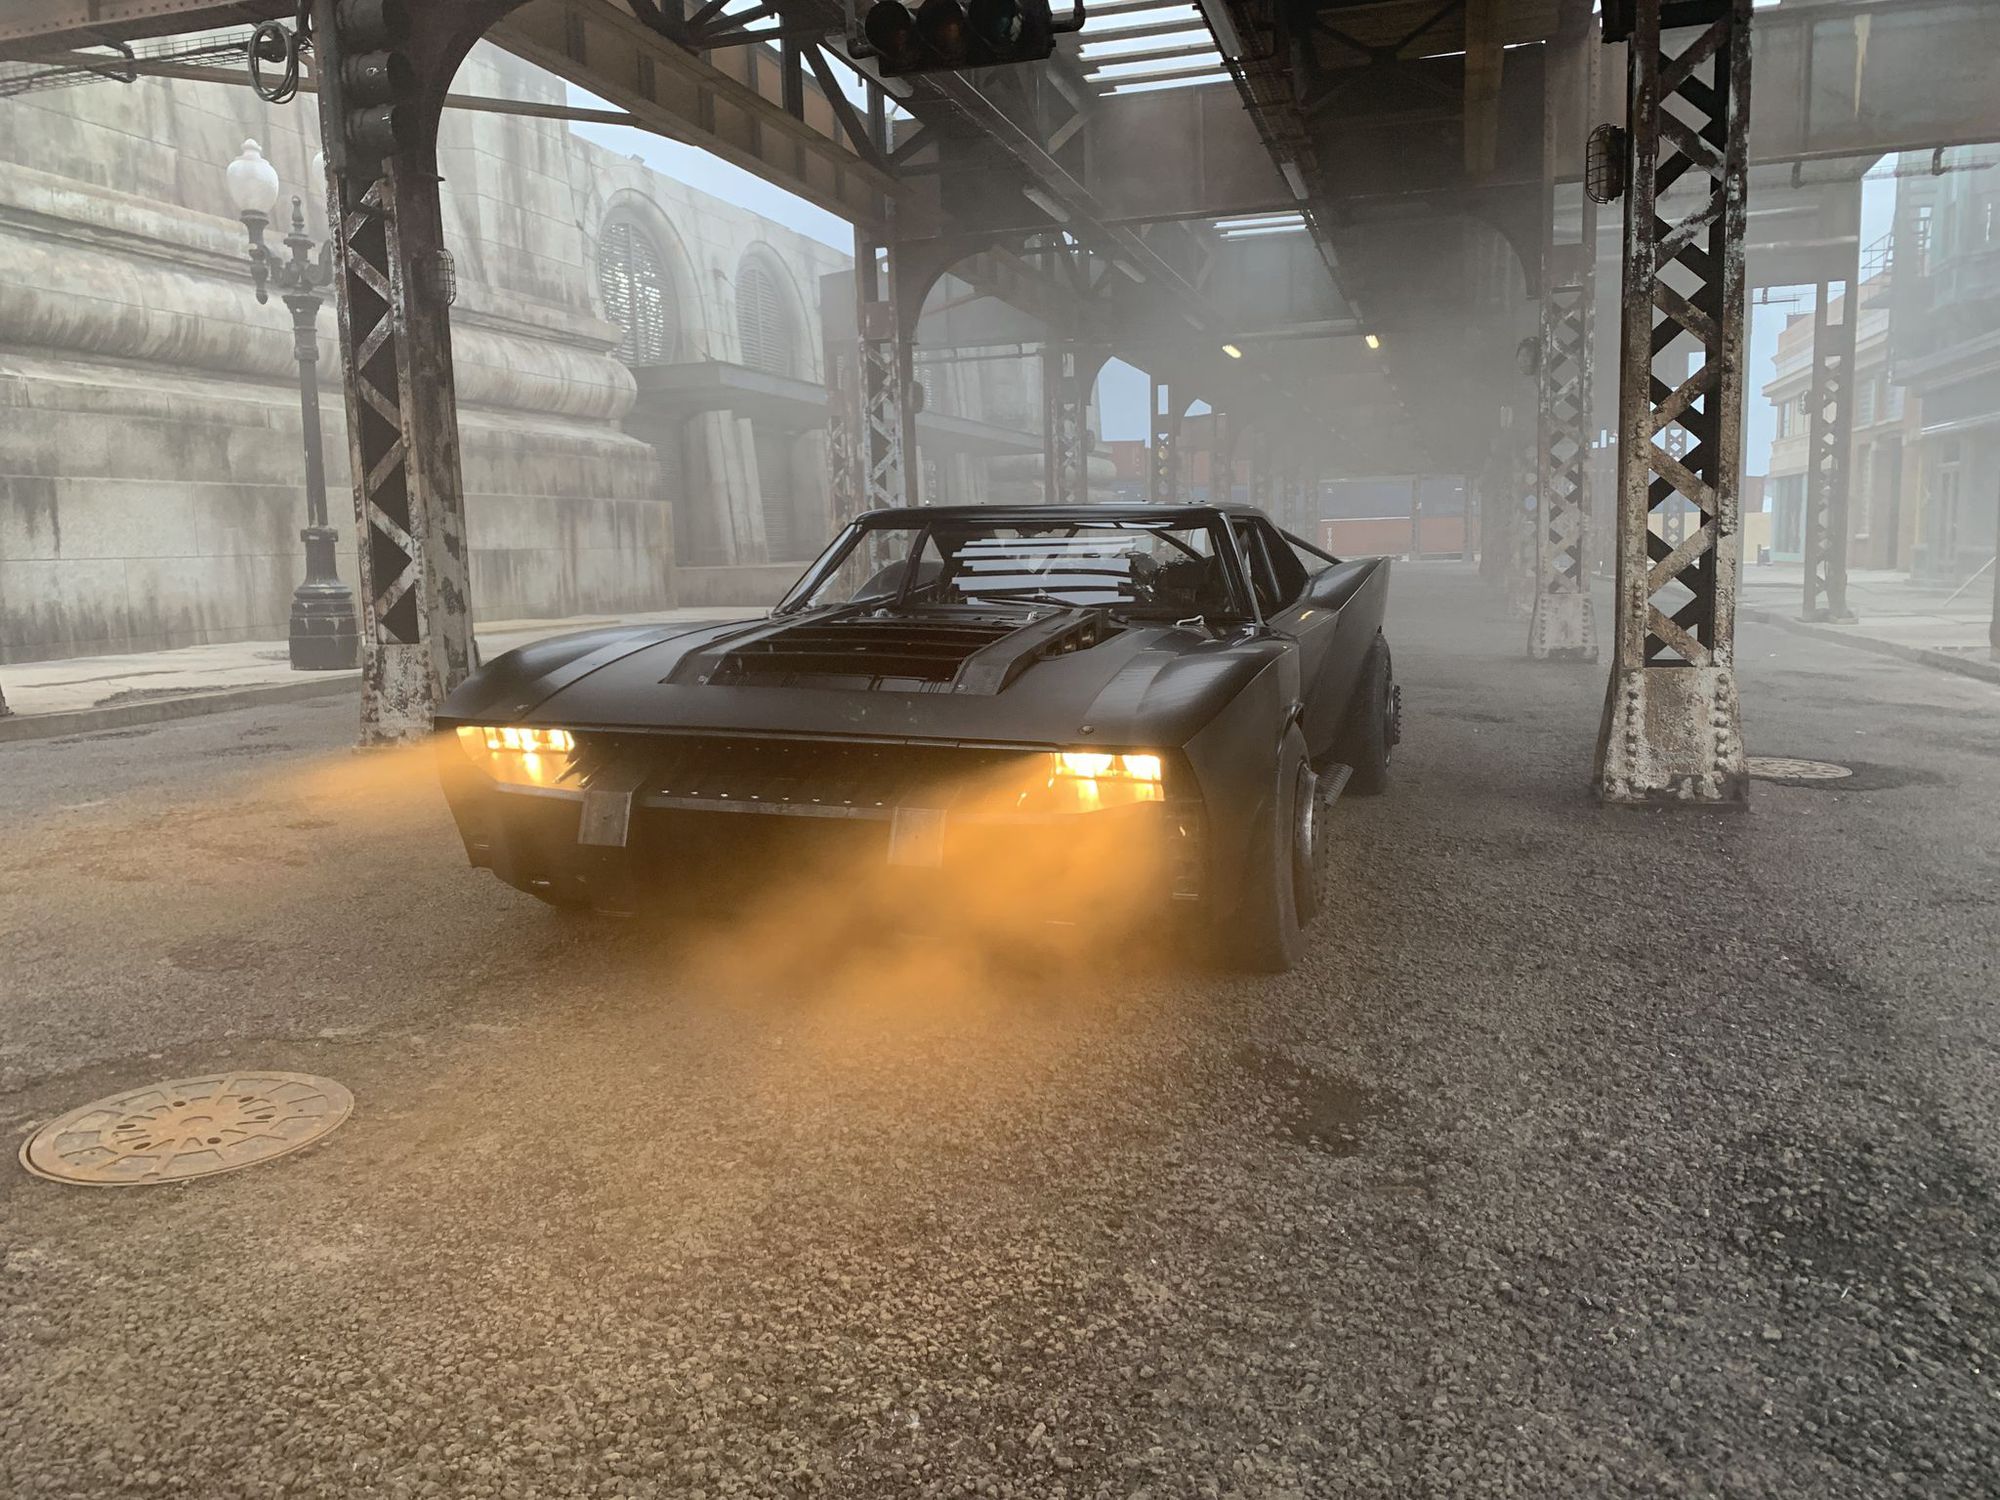 Hé lộ công đoạn công phu chế tạo Batmobile mới cho Người Dơi: Thử nghiệm khắc nghiệt như xe thật, động cơ lắp từ 300 linh kiện khác nhau - Ảnh 2.